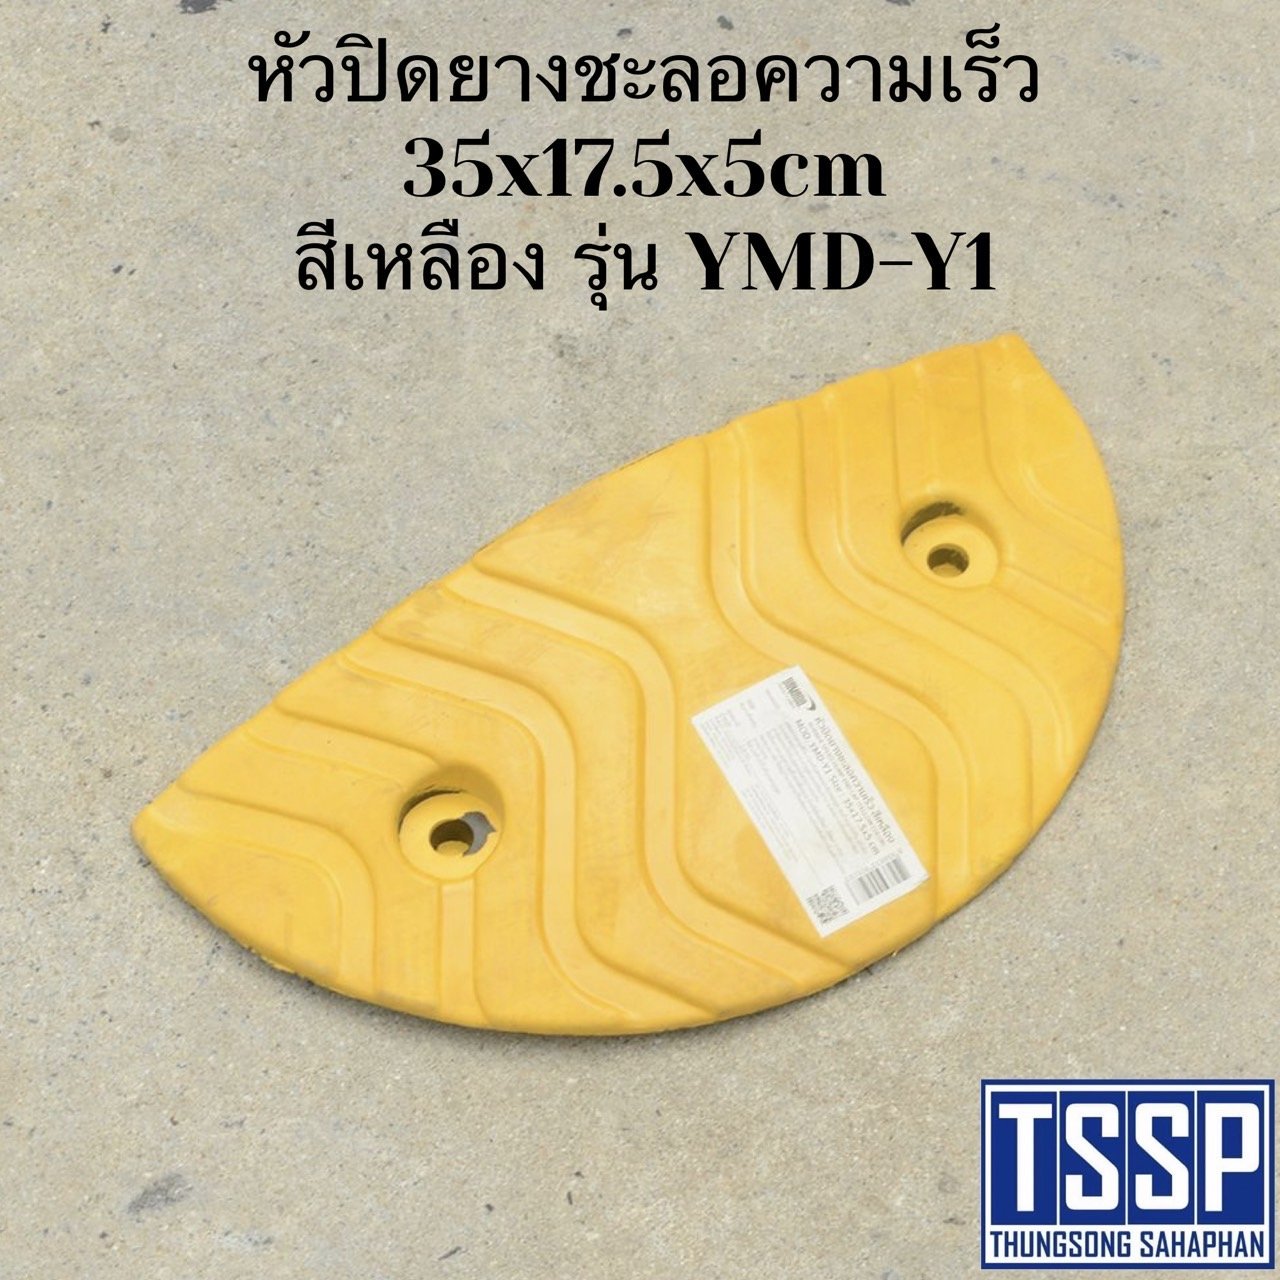 หัวปิดยางชะลอความเร็ว 35x17.5x5cm สีเหลือง รุ่น YMD-Y1